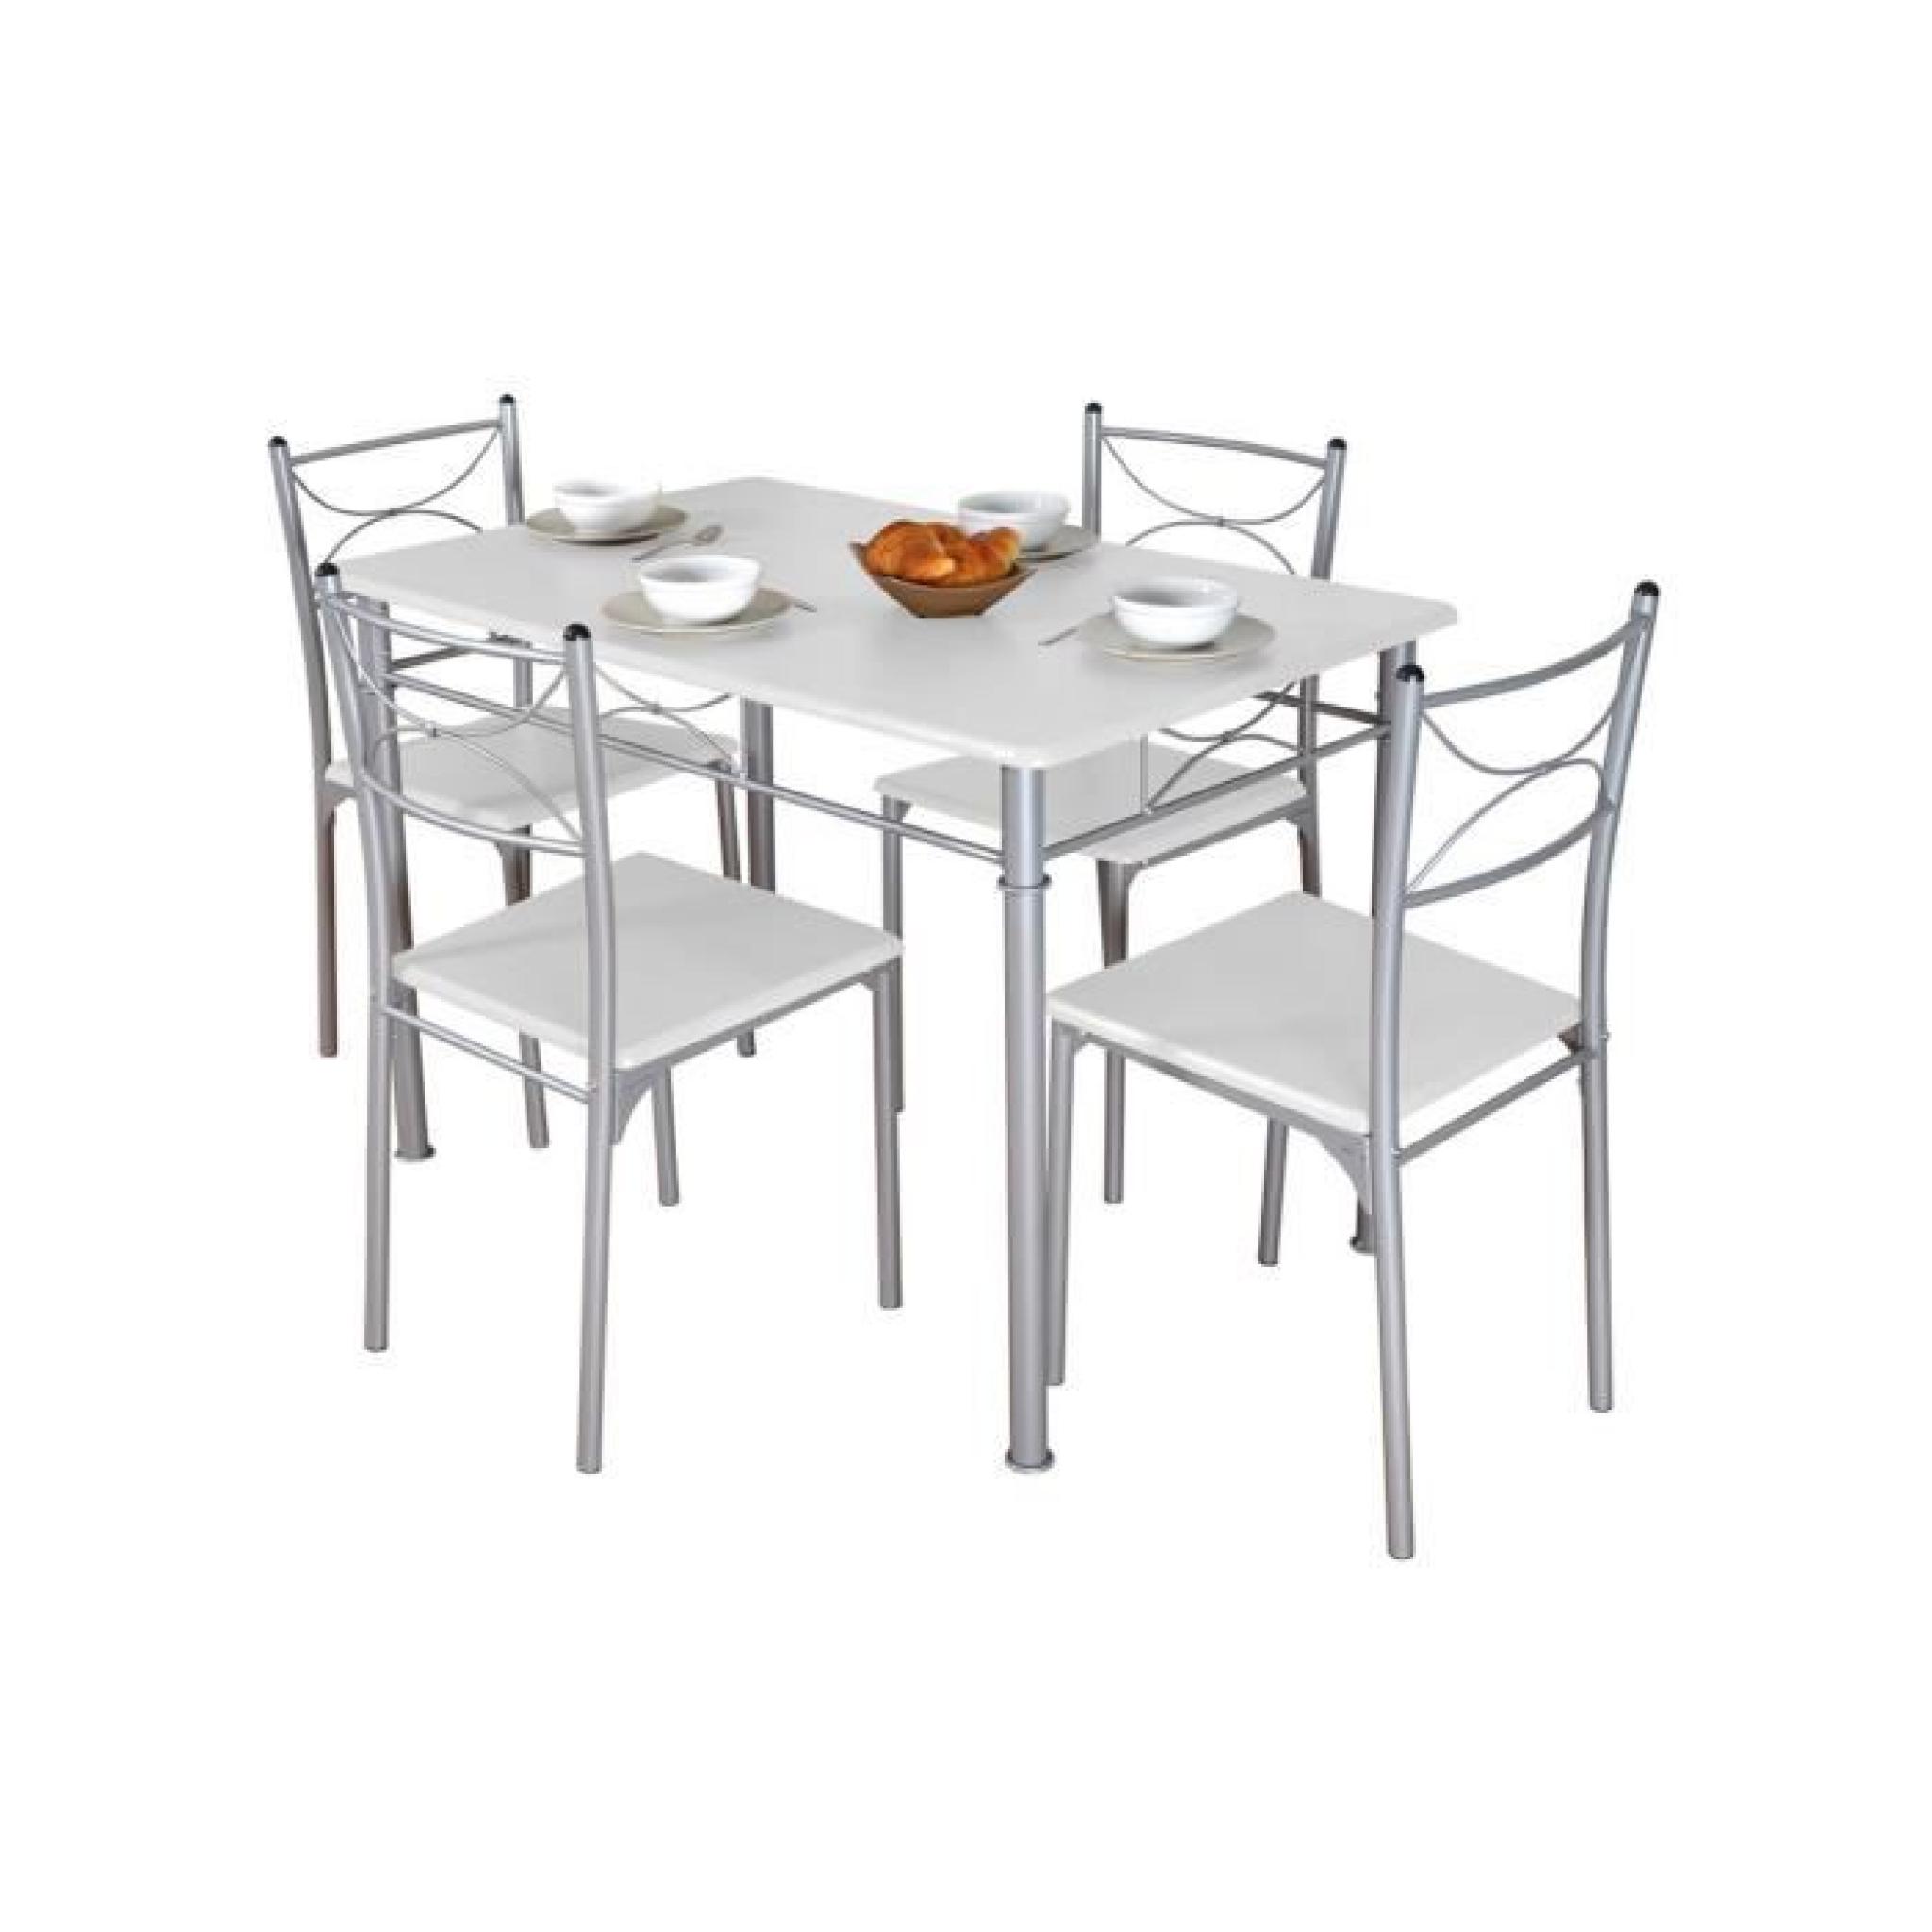 Table de repas + 4 chaises Blanc MIRELLA pas cher